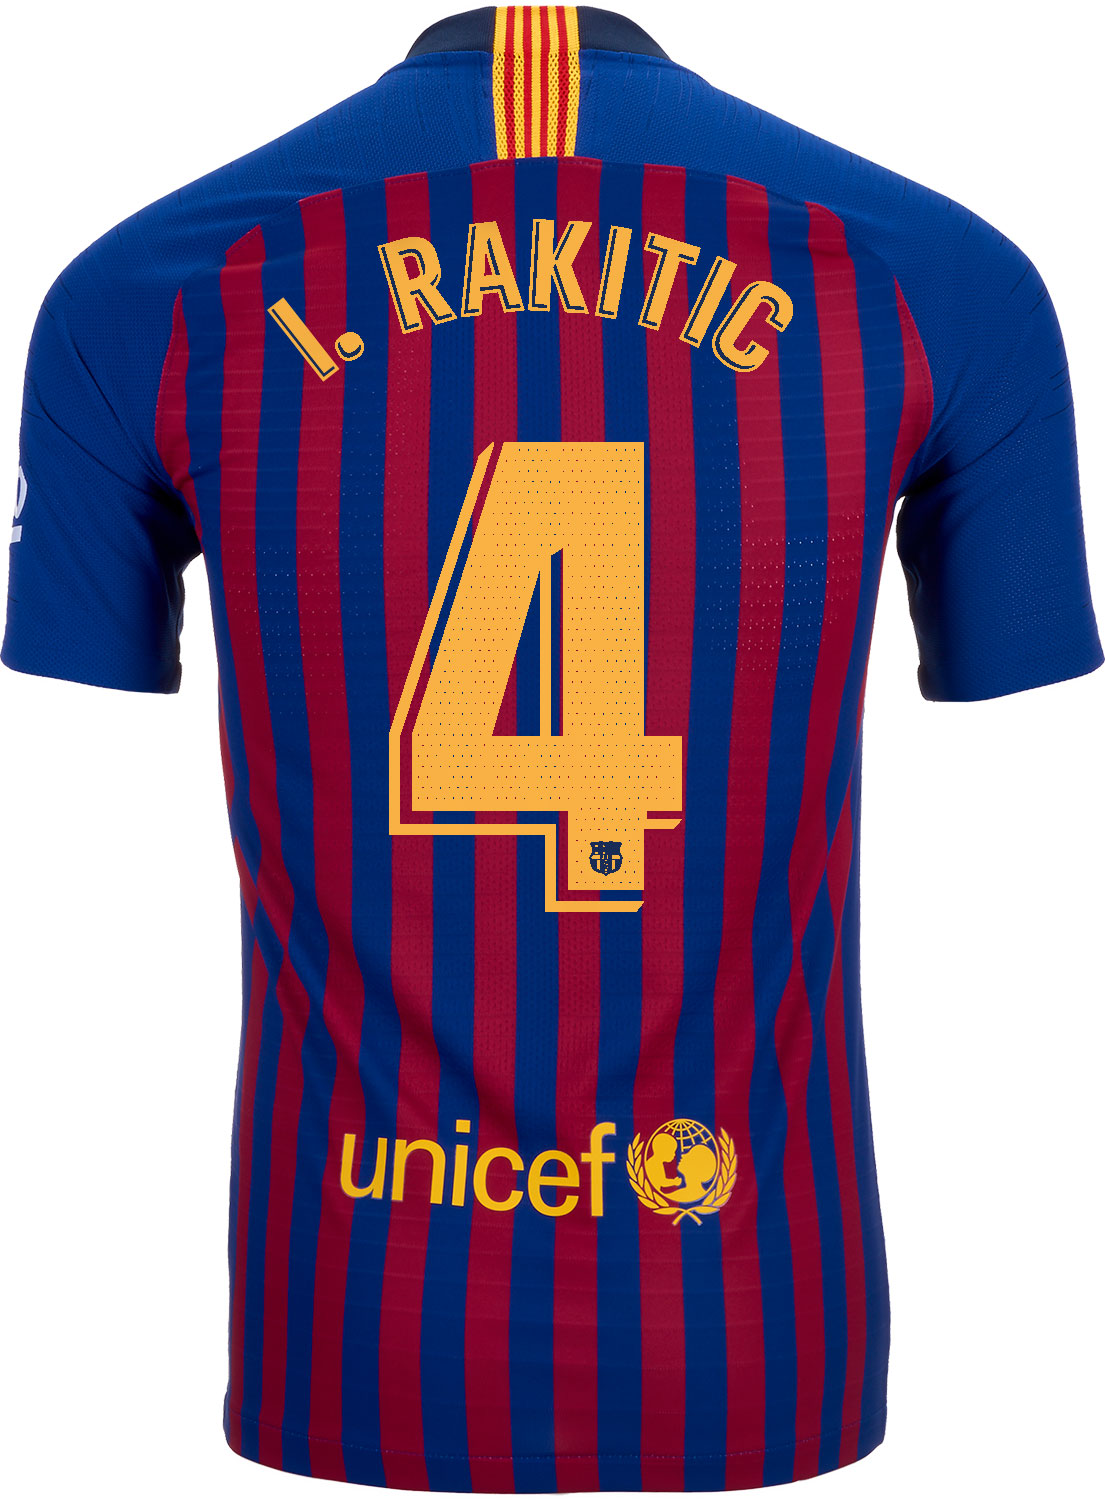 2018/19 Nike Ivan Rakitic Barcelona 